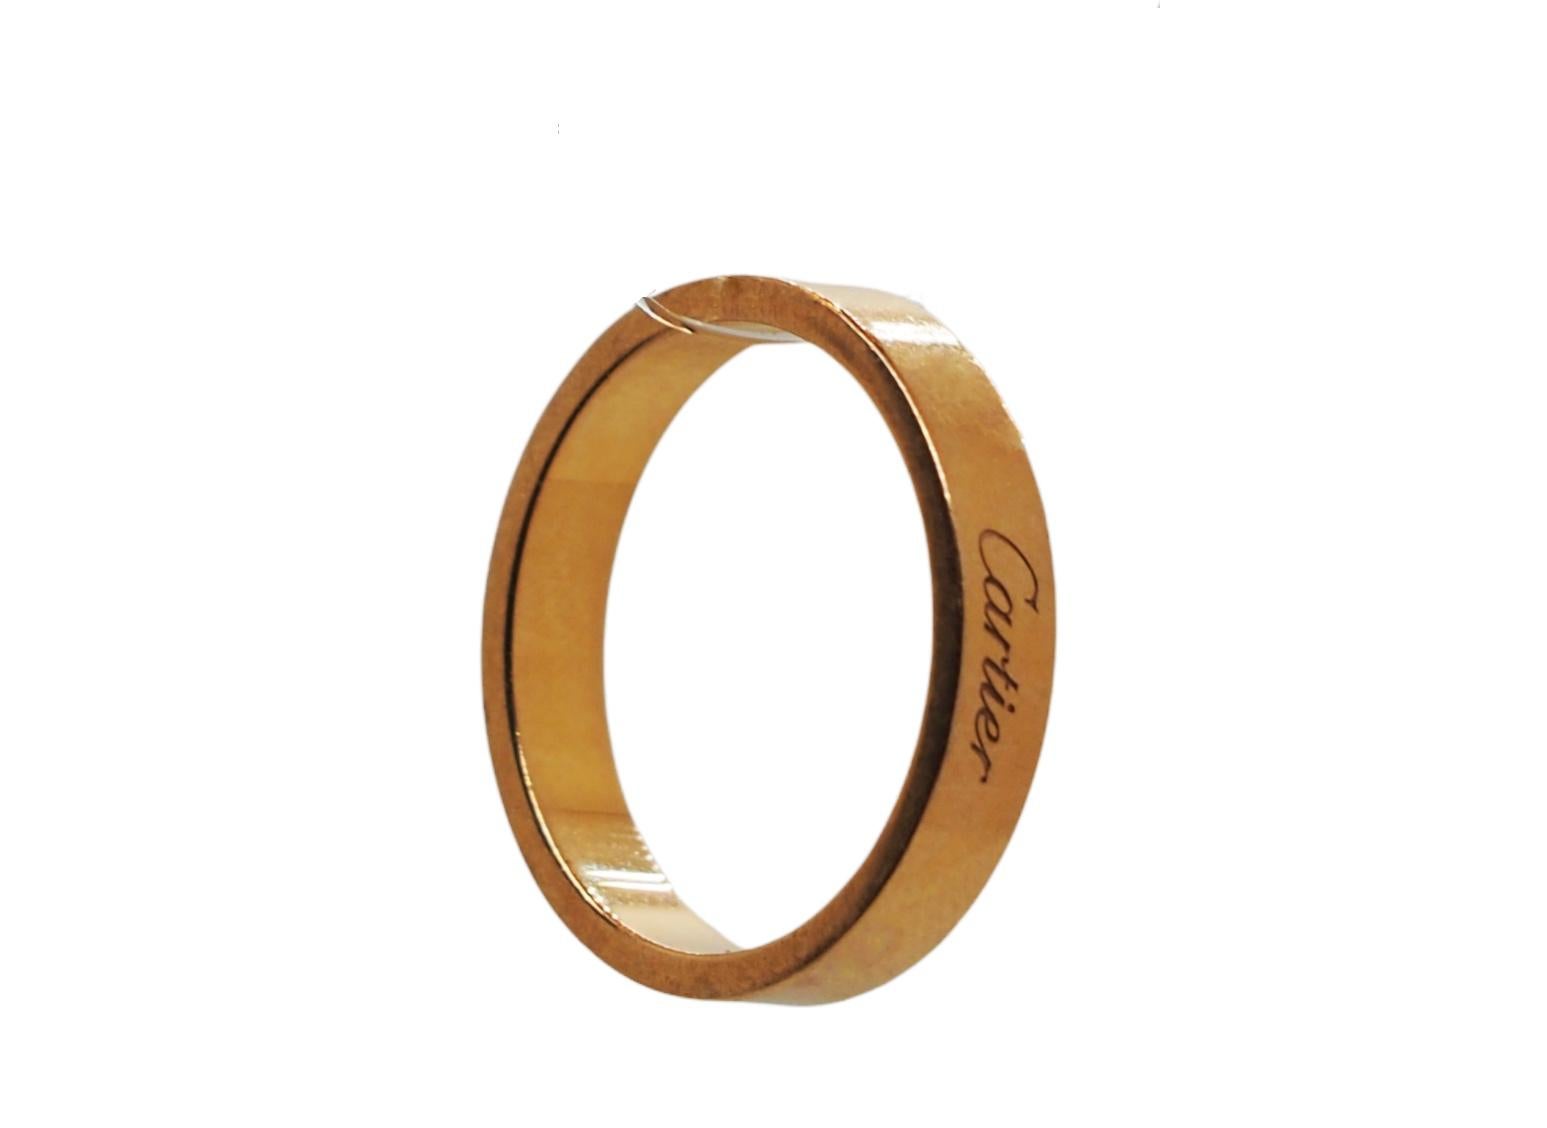 C Cartier Ehering aus 18k Roségold. Schlichter und klassischer Ring, signiert Cartier, punziert mit einer Seriennummer und 750.

Breite: 3 mm 
EU-Größe 59
US: 8.5
Gesamtgewicht: 5,8 Gramm

Der Ring kann auf Anfrage in der Größe angepasst